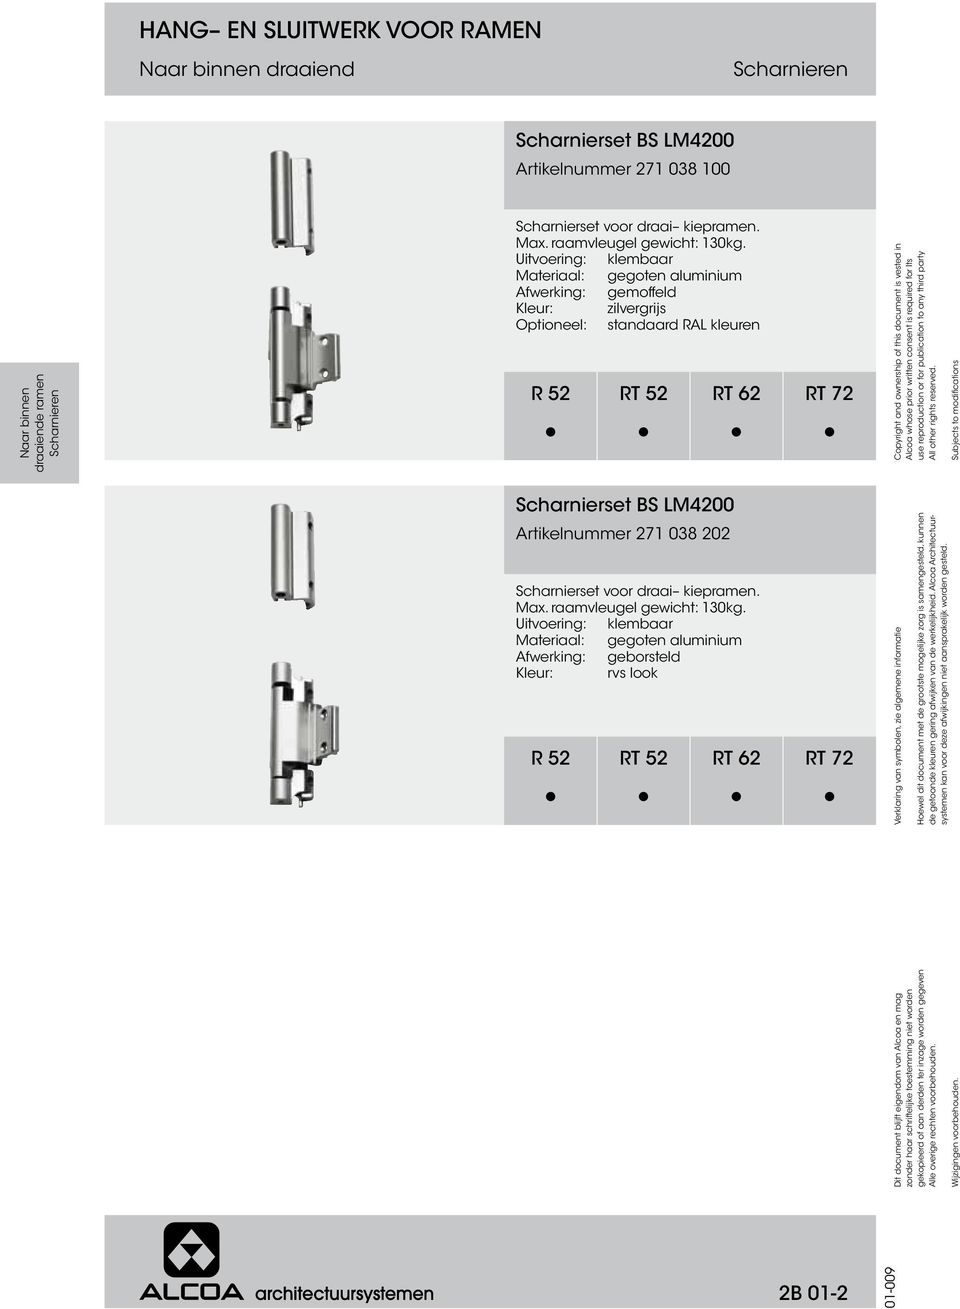 Uitvoering: klembaar Materiaal: gegoten aluminium zilvergrijs Scharnierset BS LM4200 Artikelnummer 271 038 202